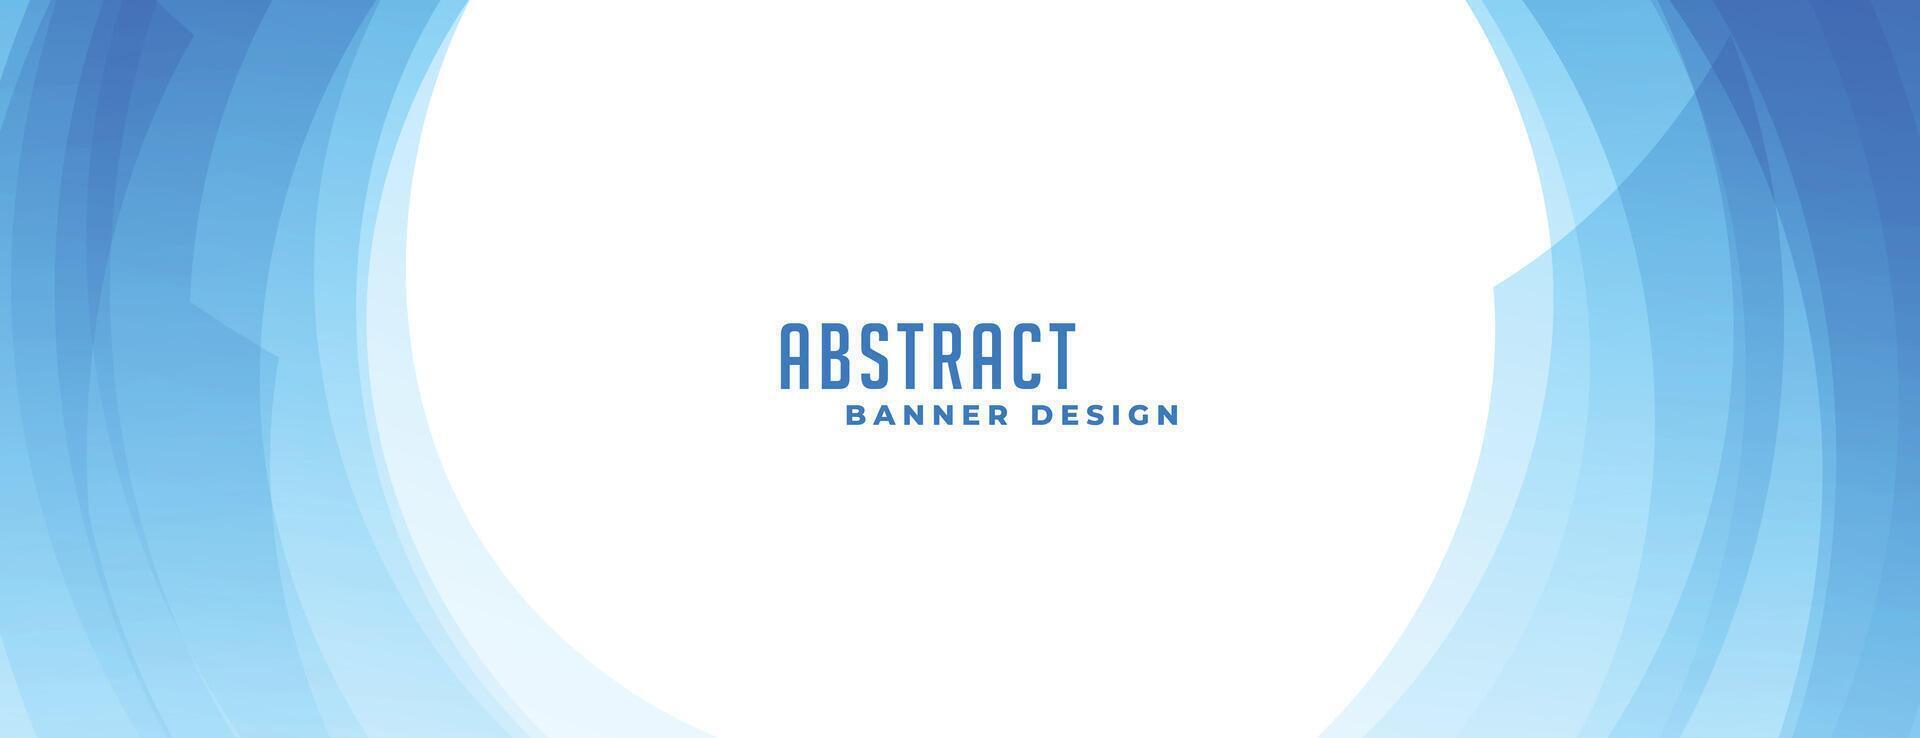 kreisförmig Blau abstrakt wellig Banner Design vektor